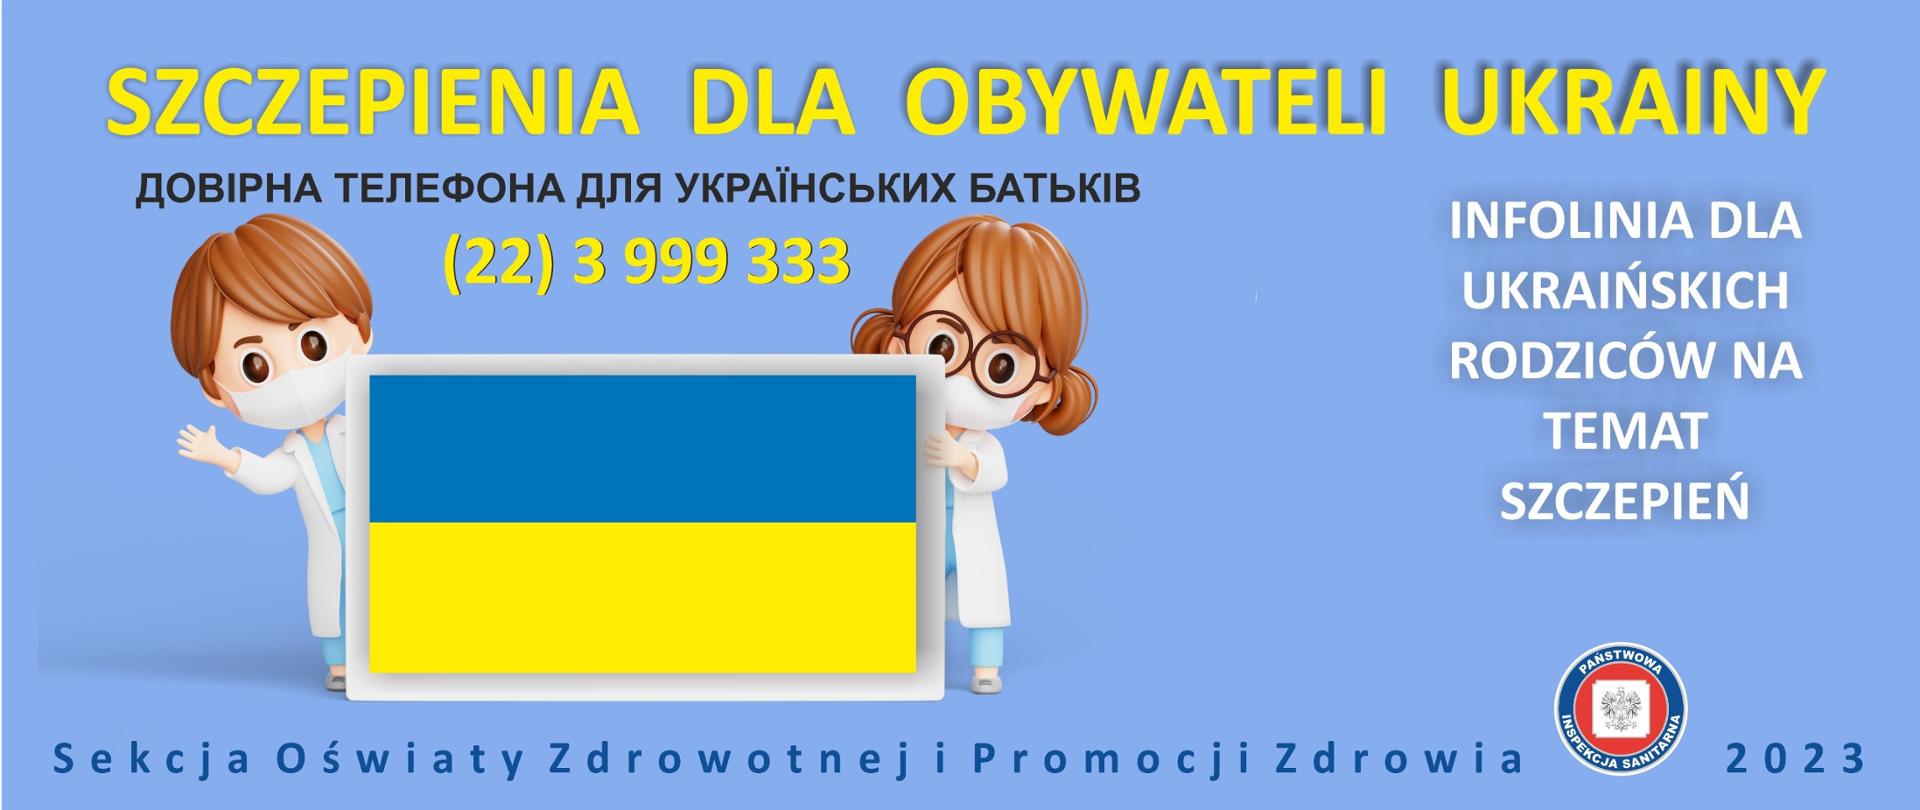 Szczepienia dla obywateli Ukrainy